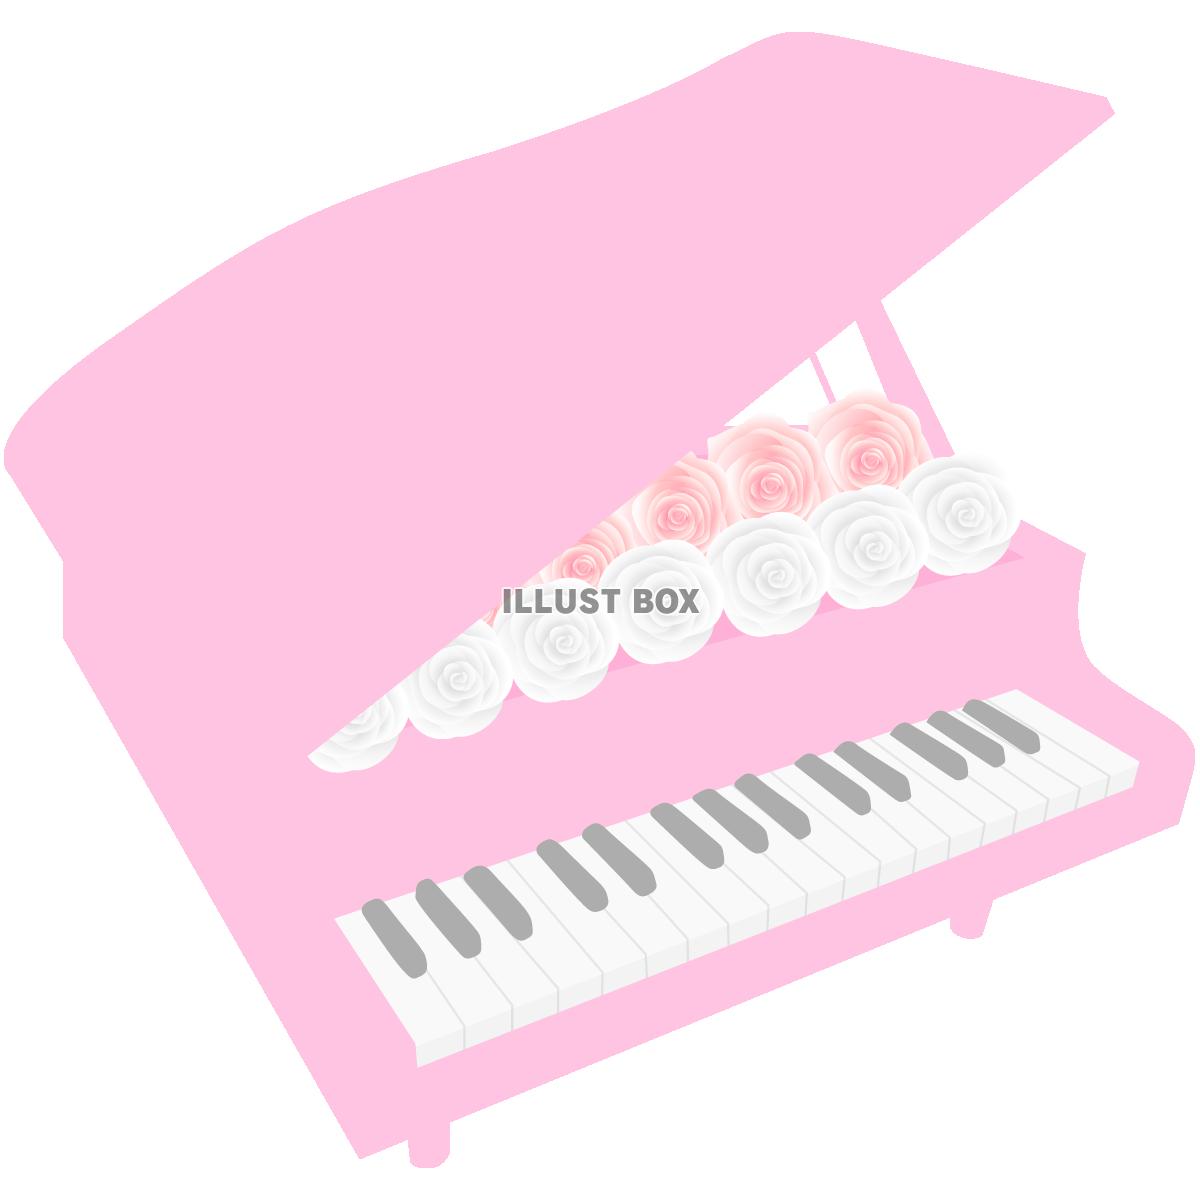 ピンクのピアノ5(png・CSeps）